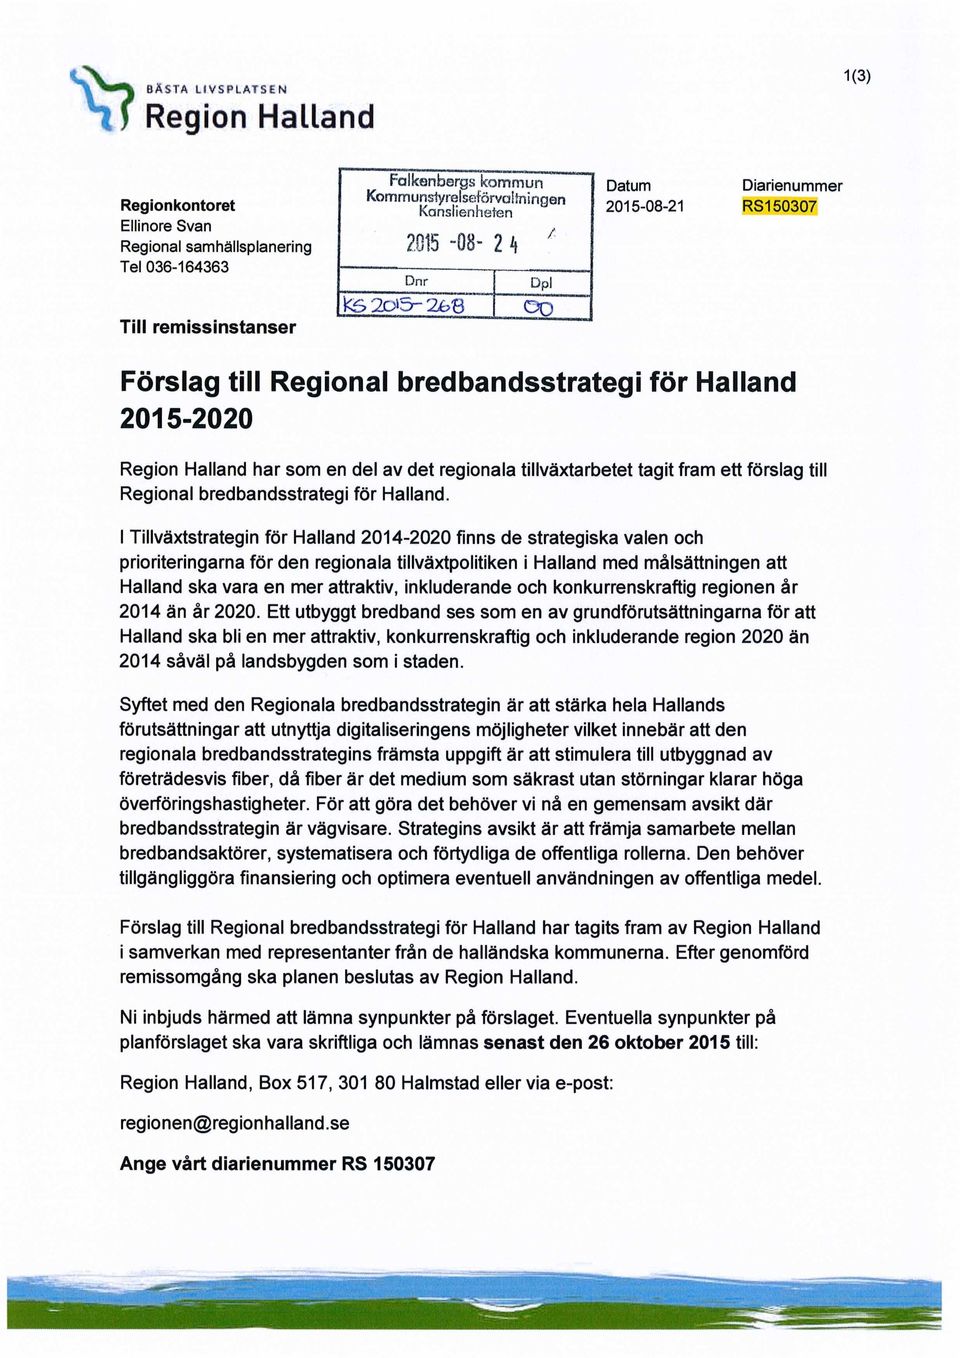 fram ett förslag till Regional bredbandsstrategi för Halland.